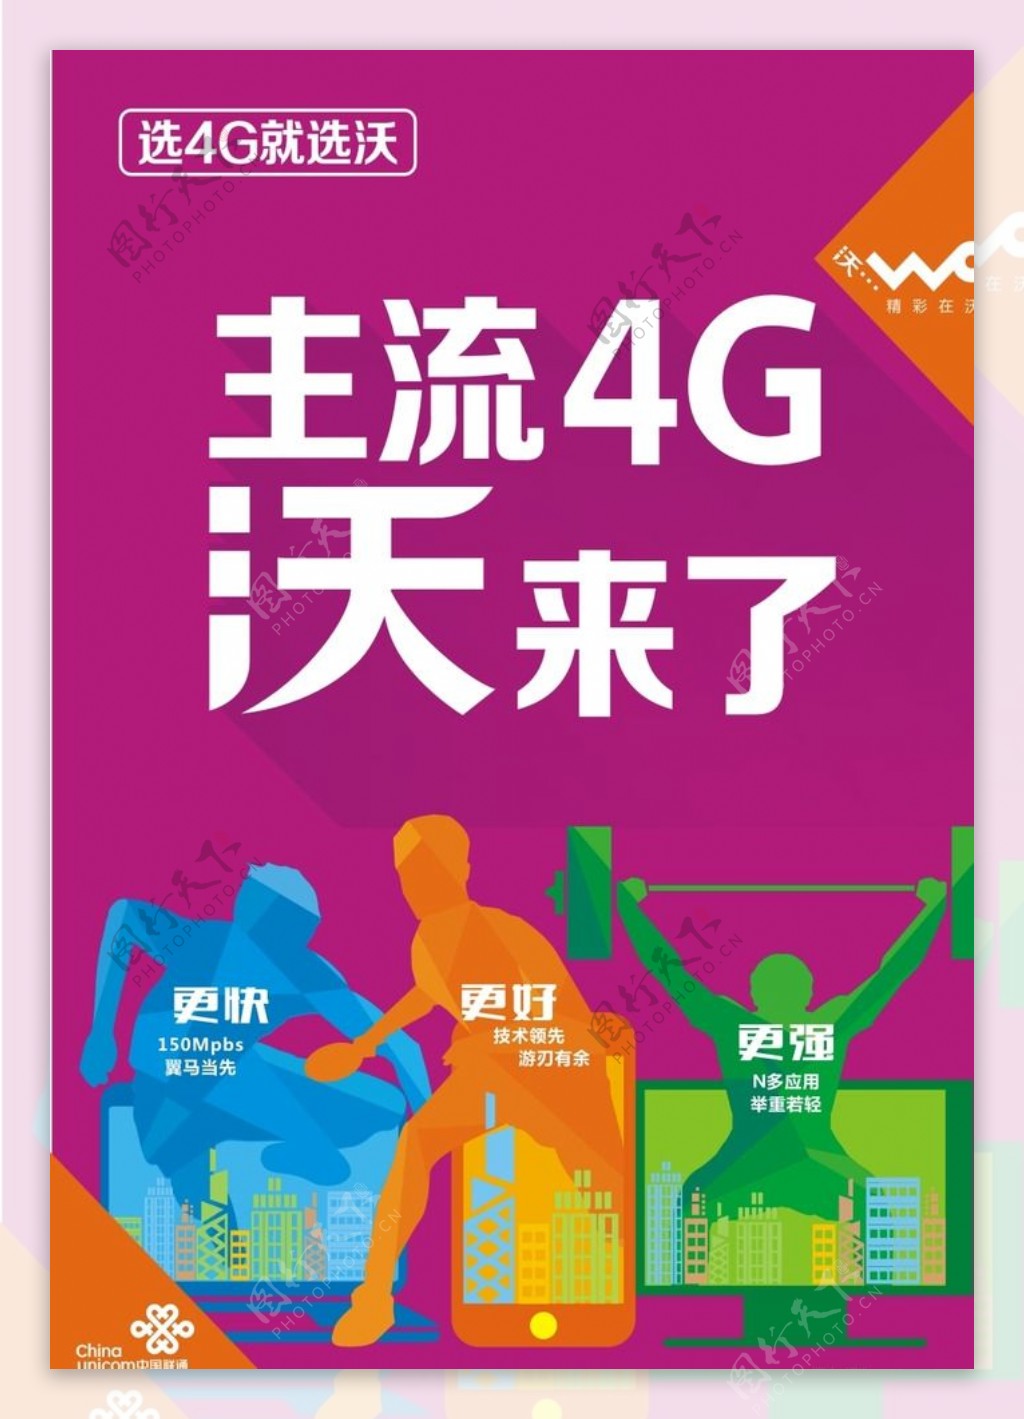 中国联通4G沃海报图片